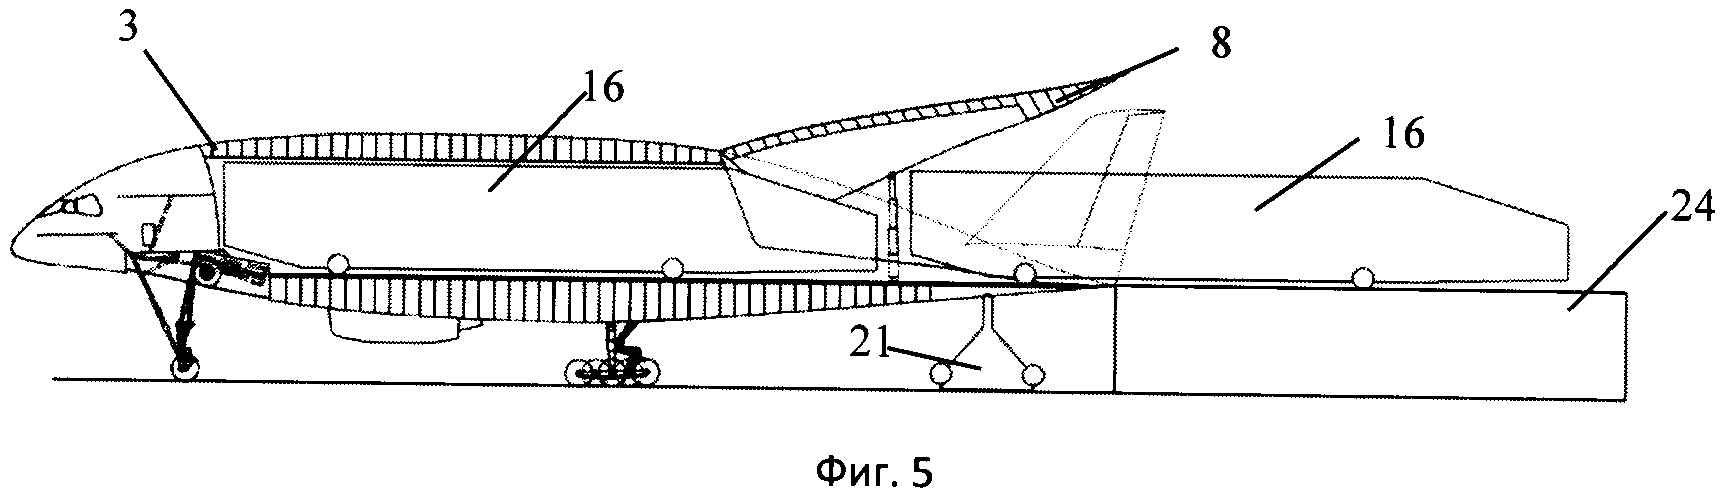 Грузовой самолёт интегральной схемы с неотклоняемой хвостовой рампой для погрузки и выгрузки крупногабаритного груза